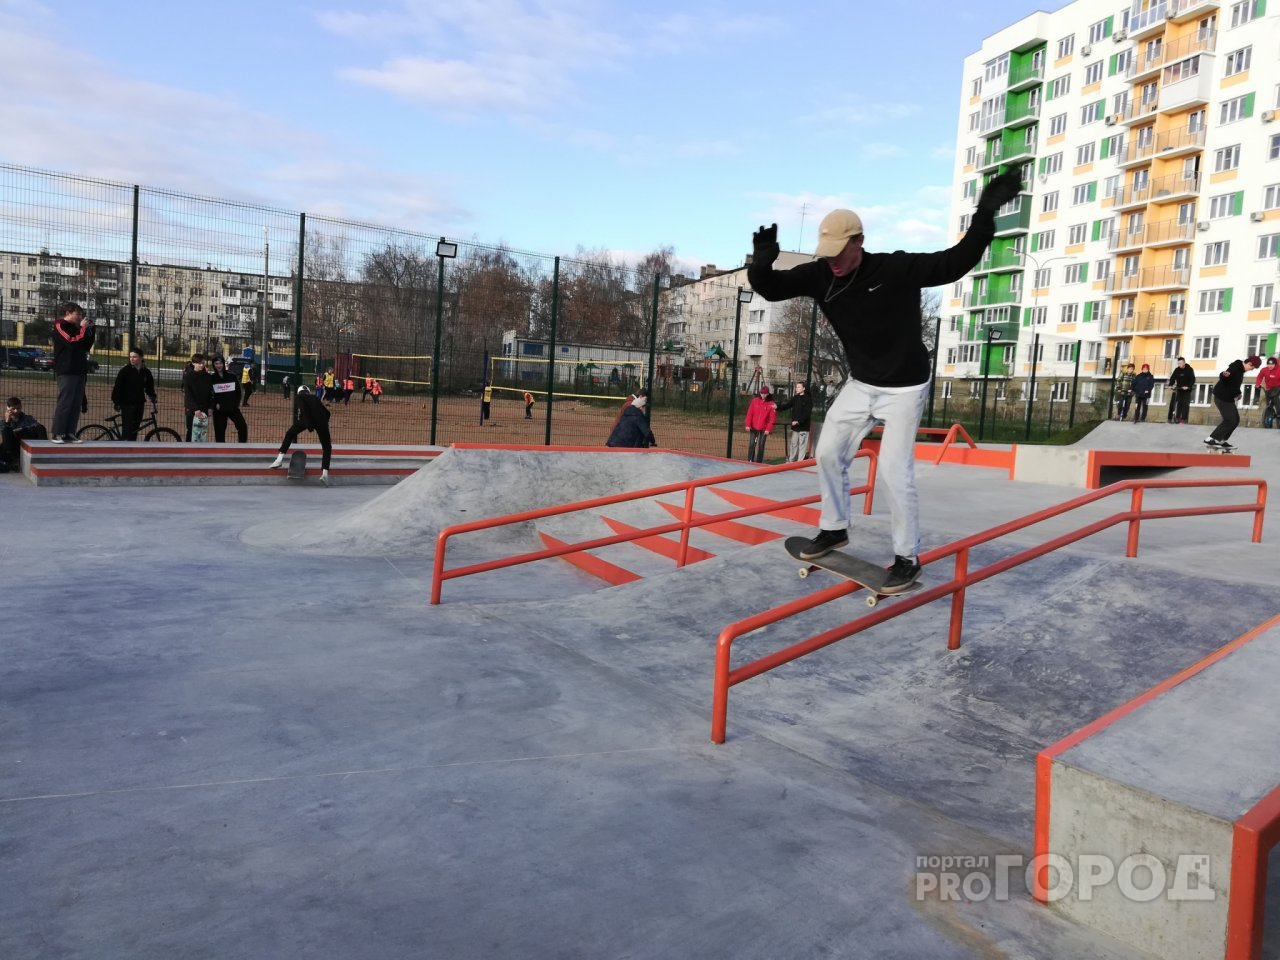 С громкой музыкой и радостными лицами: в Дзержинске открылся первый скейт-парк